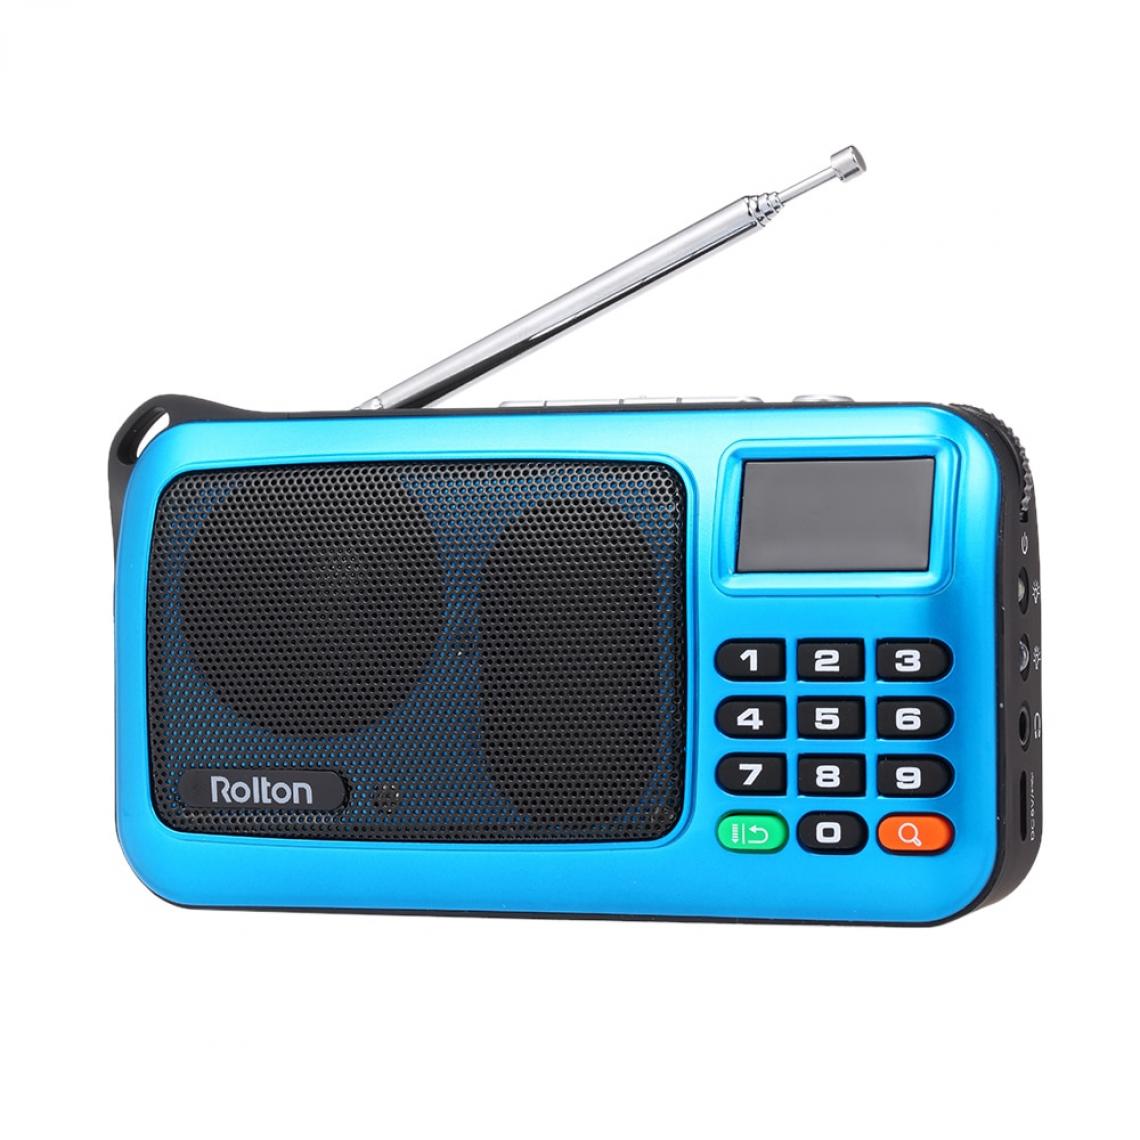 Universal - Mini radio FM portable PC haut-parleur lecteur de musique USB TF cassette écran LED récepteur stéréo HIFI radio FM numérique(Bleu) - Radio